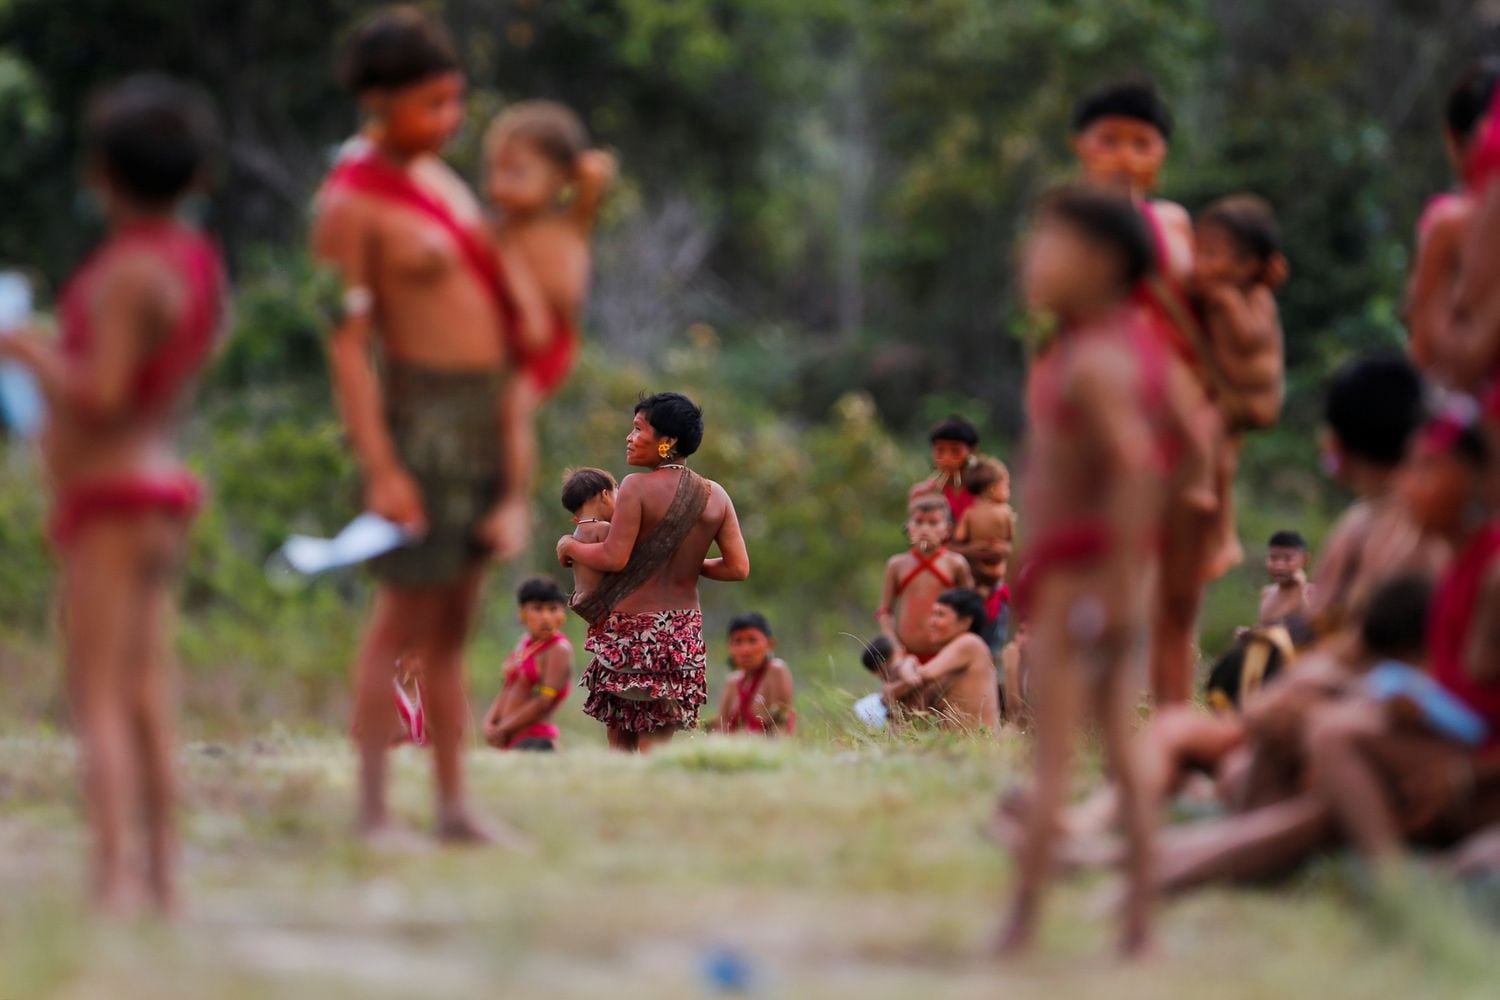 Mães Yanomami com suas crianças em Surucucu, Roraima, em julho de 2020.